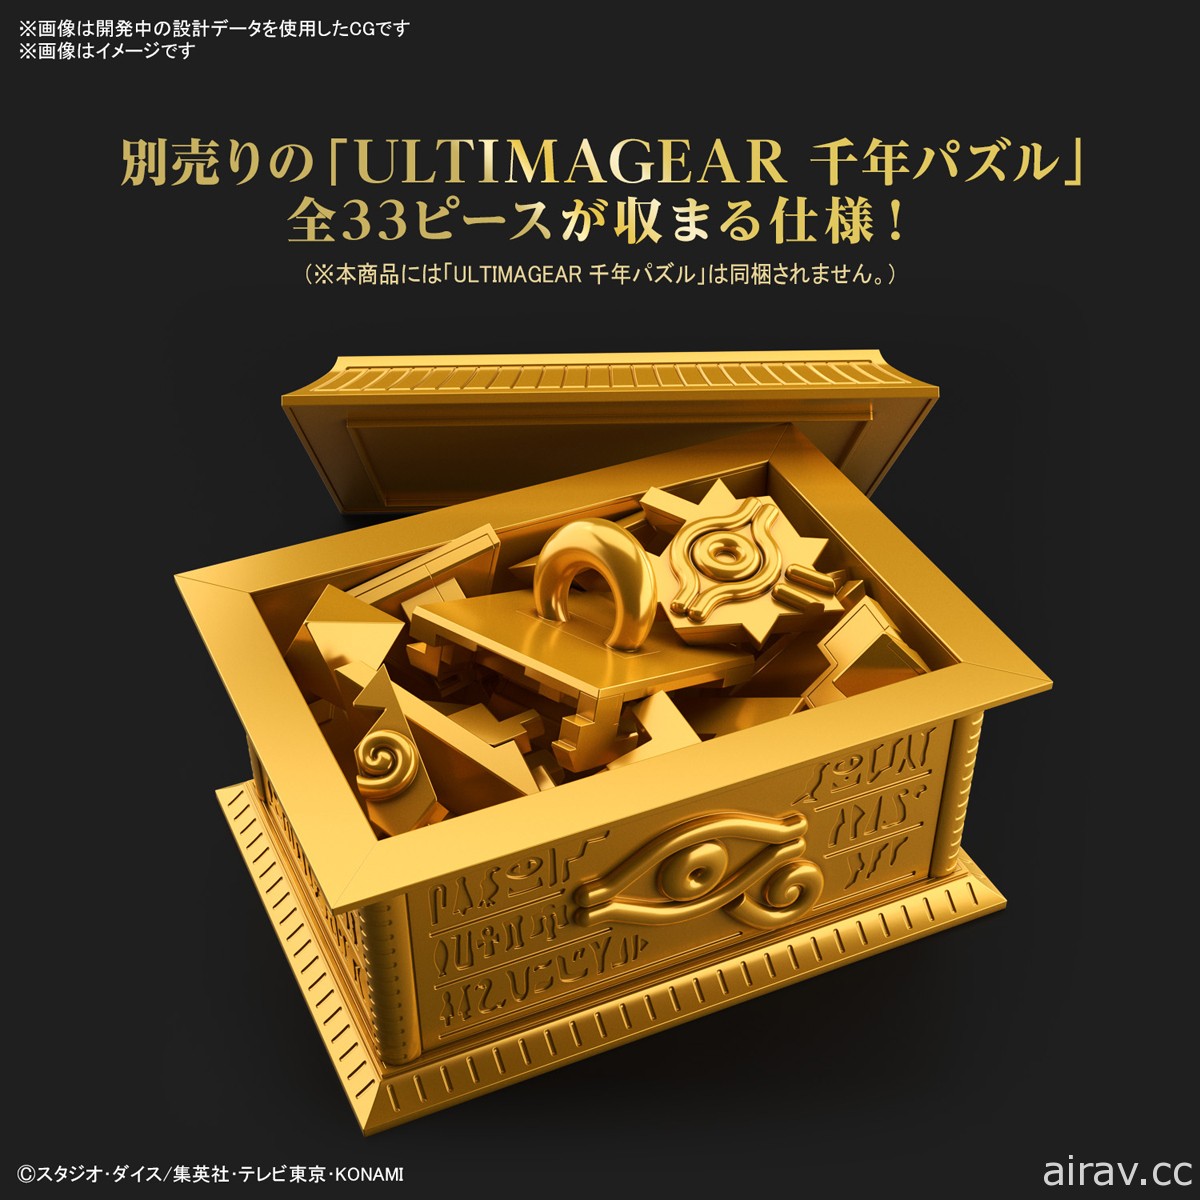 《游戏王》千年积木收纳箱“黄金柜”将于明年 2 月发售